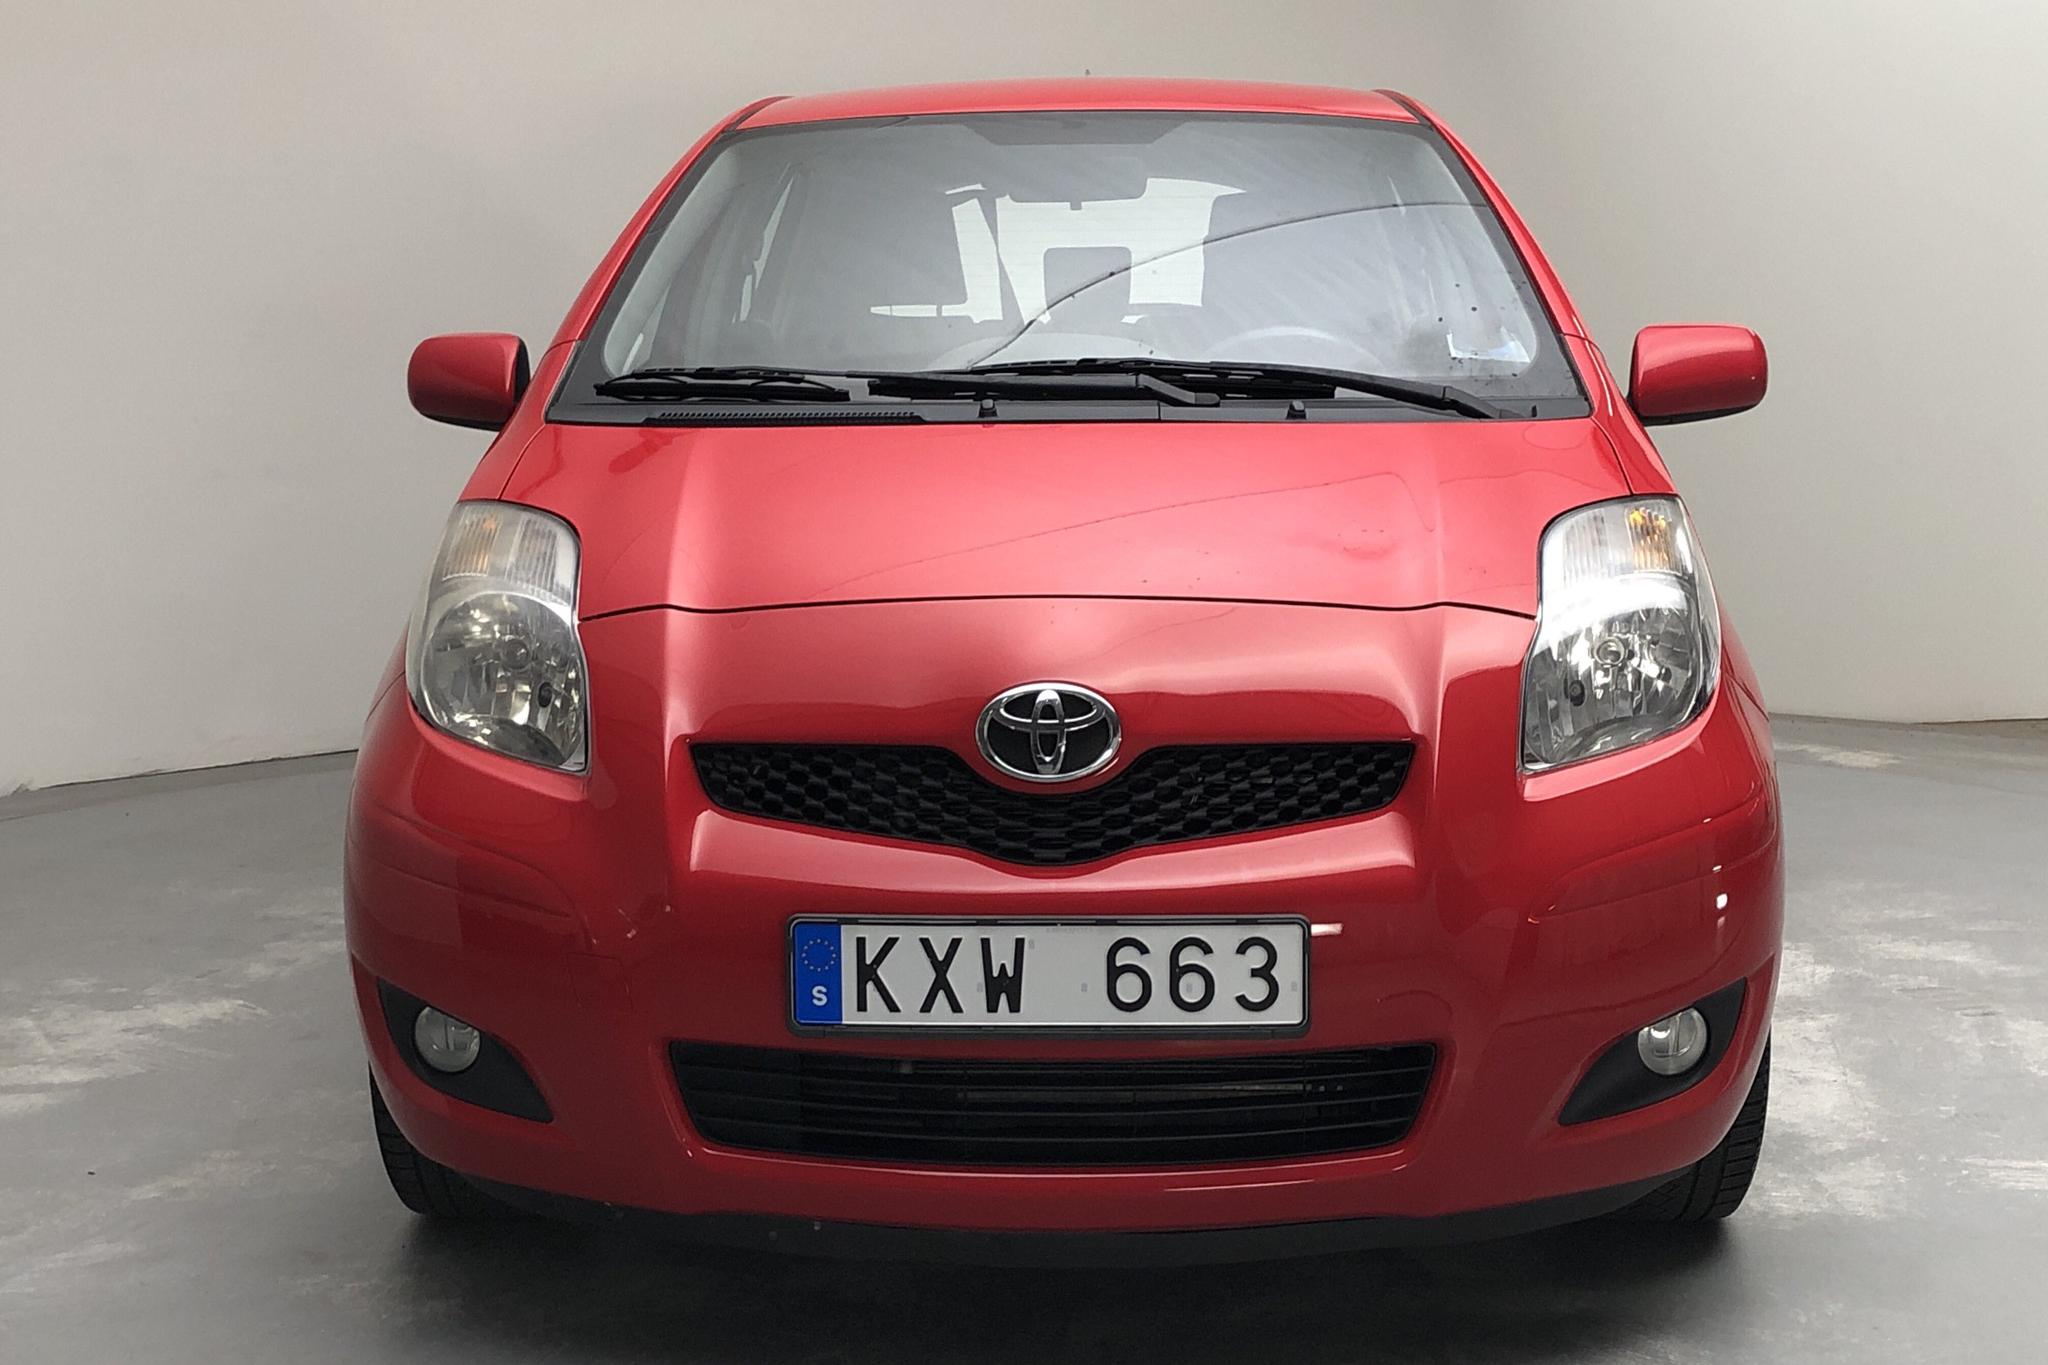 Toyota Yaris 1.0 5dr (69hk) - 99 690 km - Manual - red - 2011